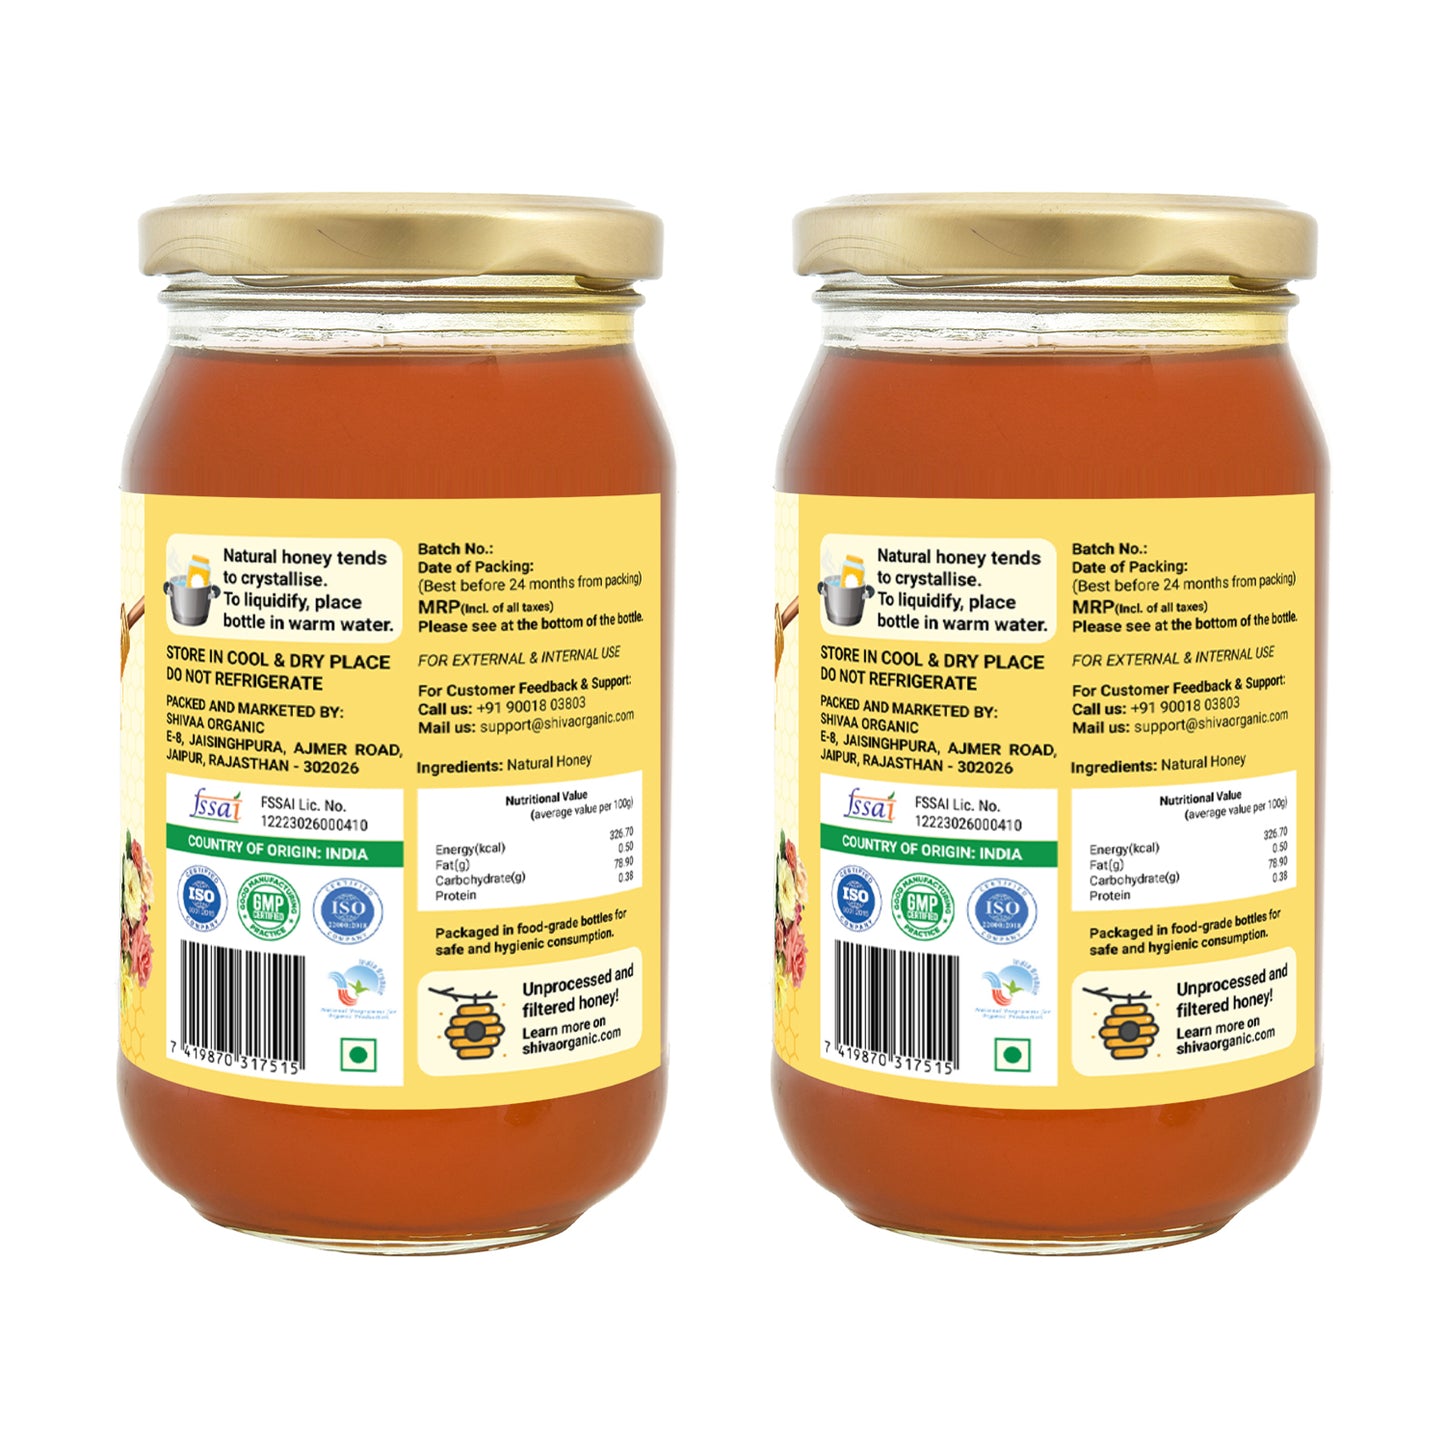 Organic honey 1kg | Multi Flora Honey | pure honey | Shiva Organic